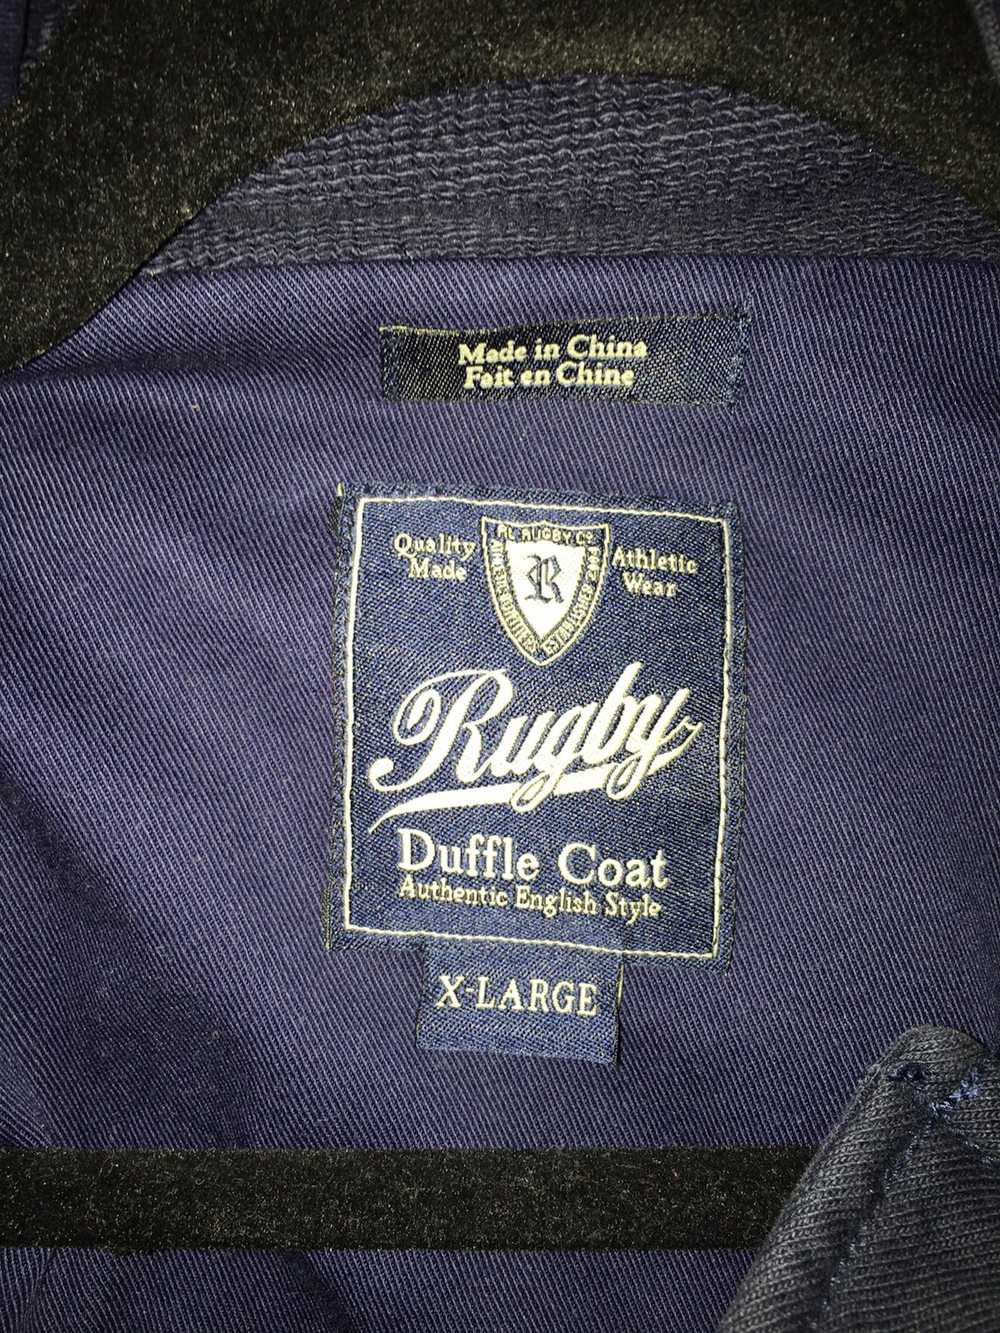 Ralph Lauren Rugby Duffle Coat Fleece - image 5